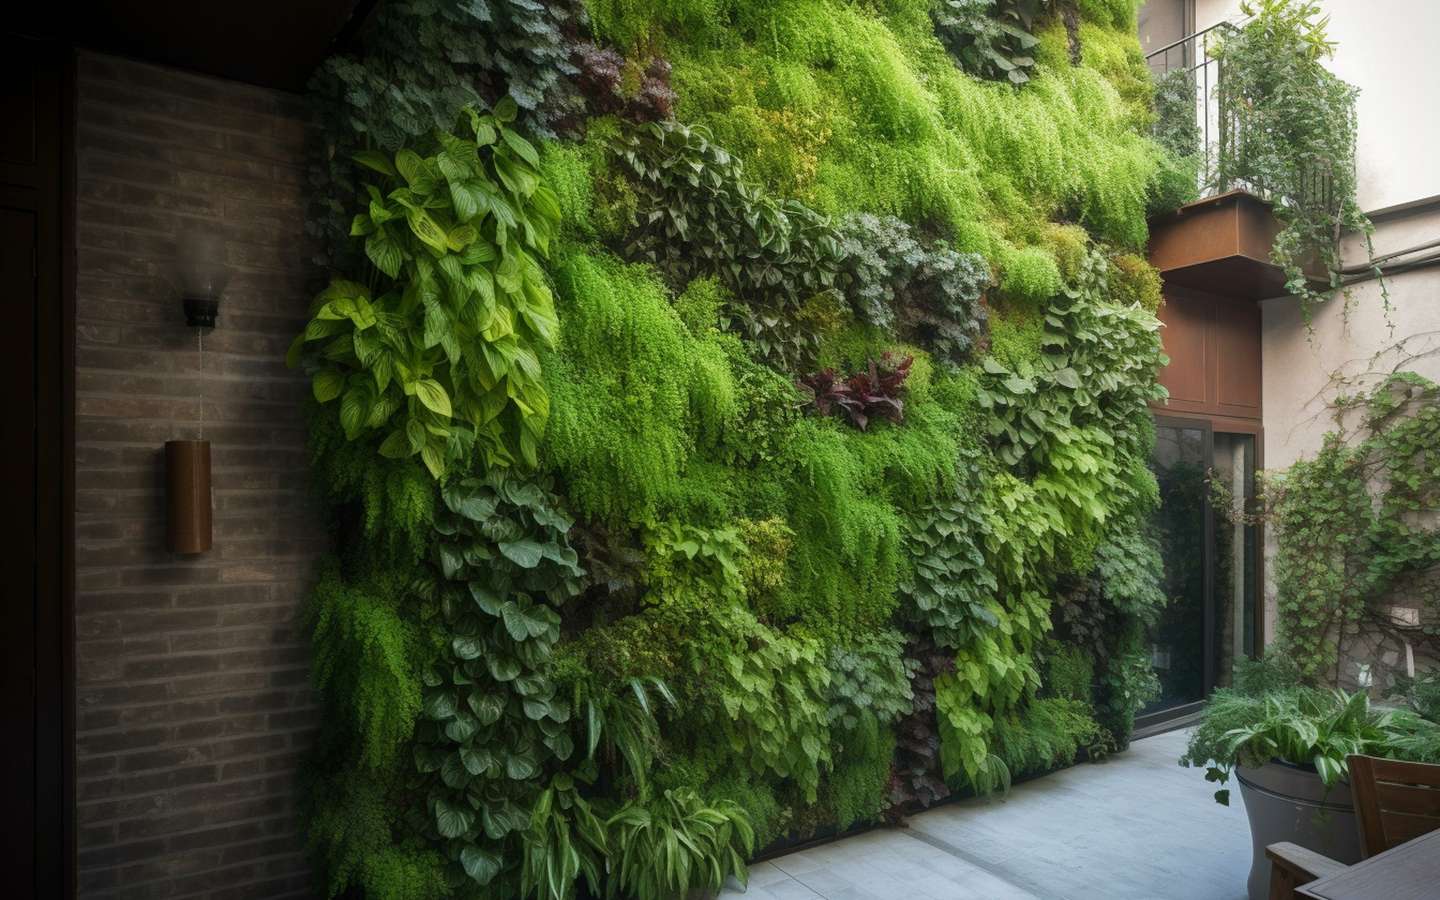 Comment créer facilement un mur végétal pour votre jardin ?